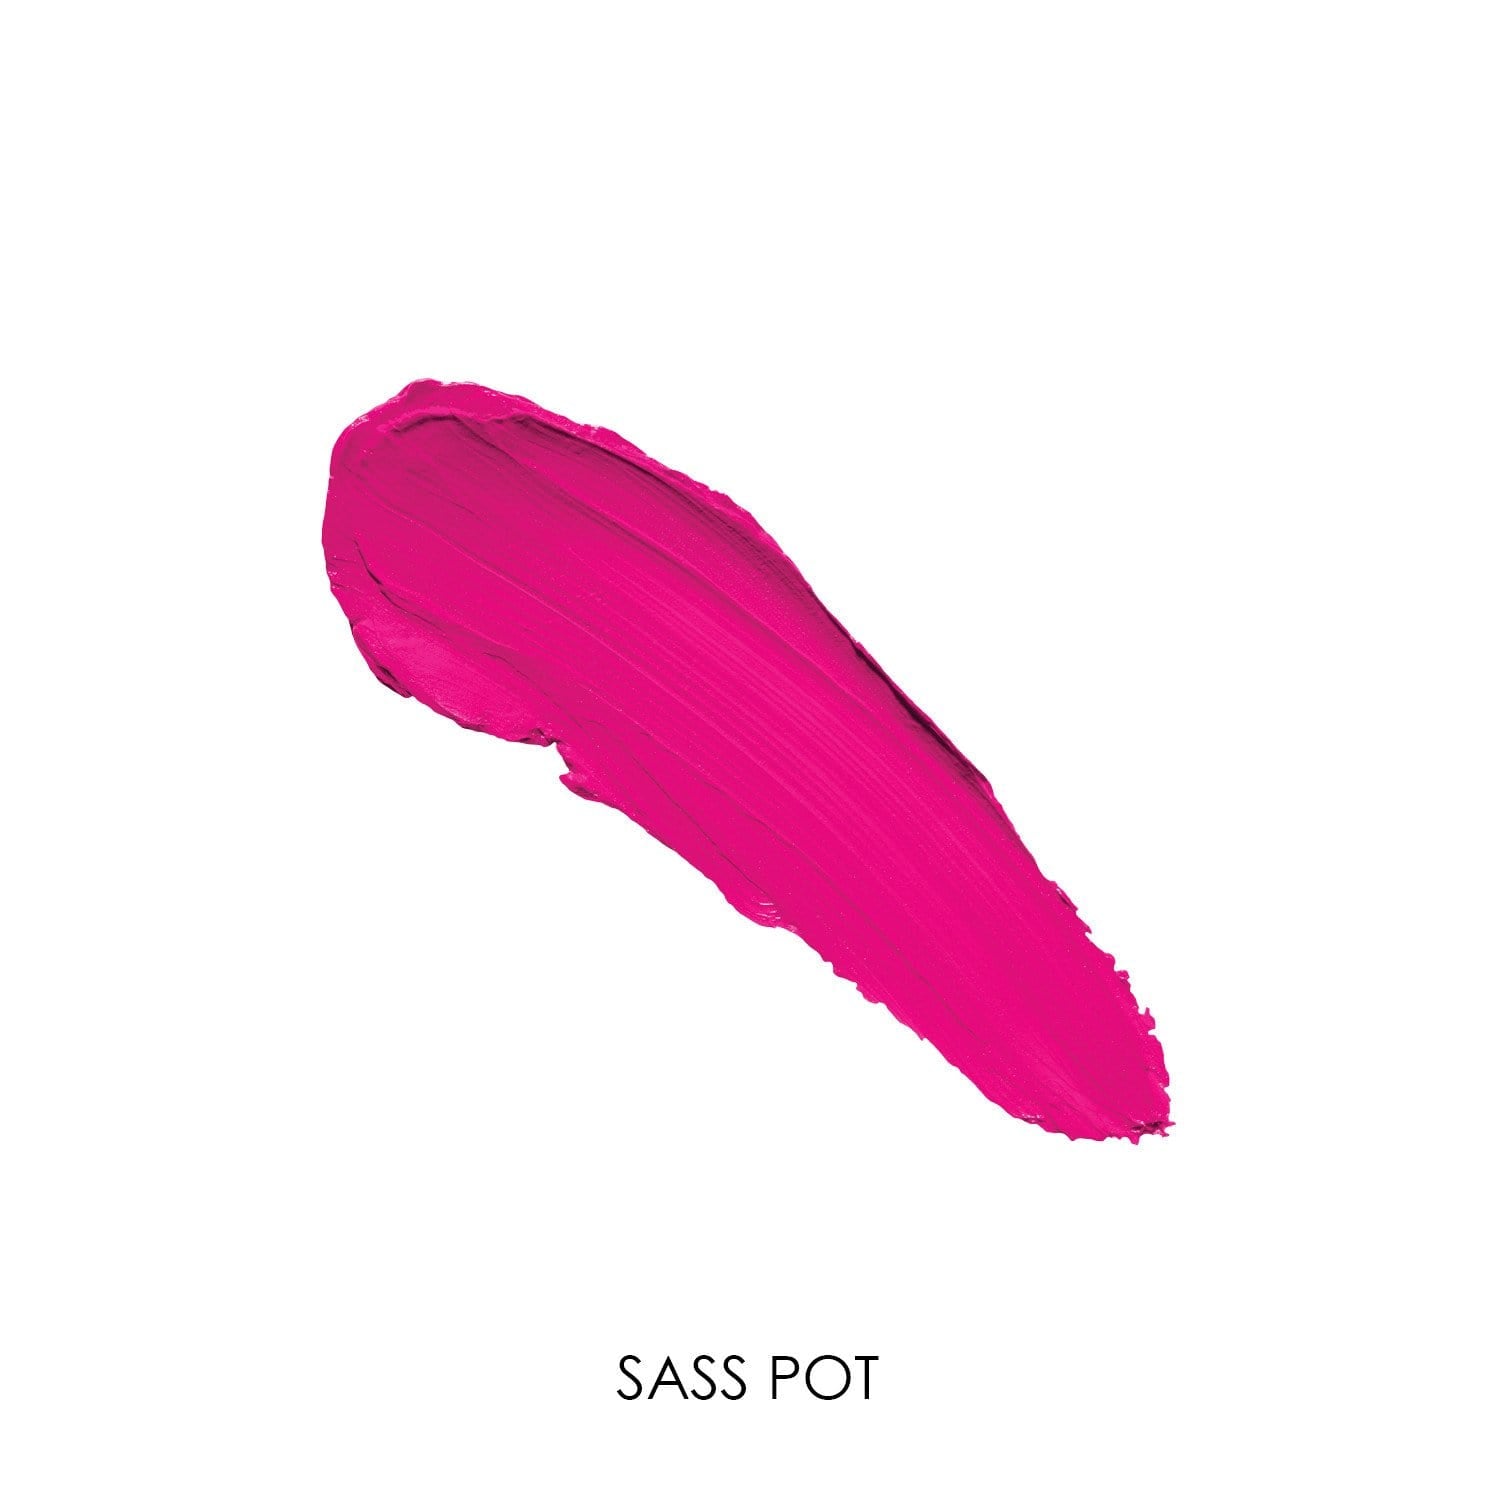  Sass Pot - Bright Pink